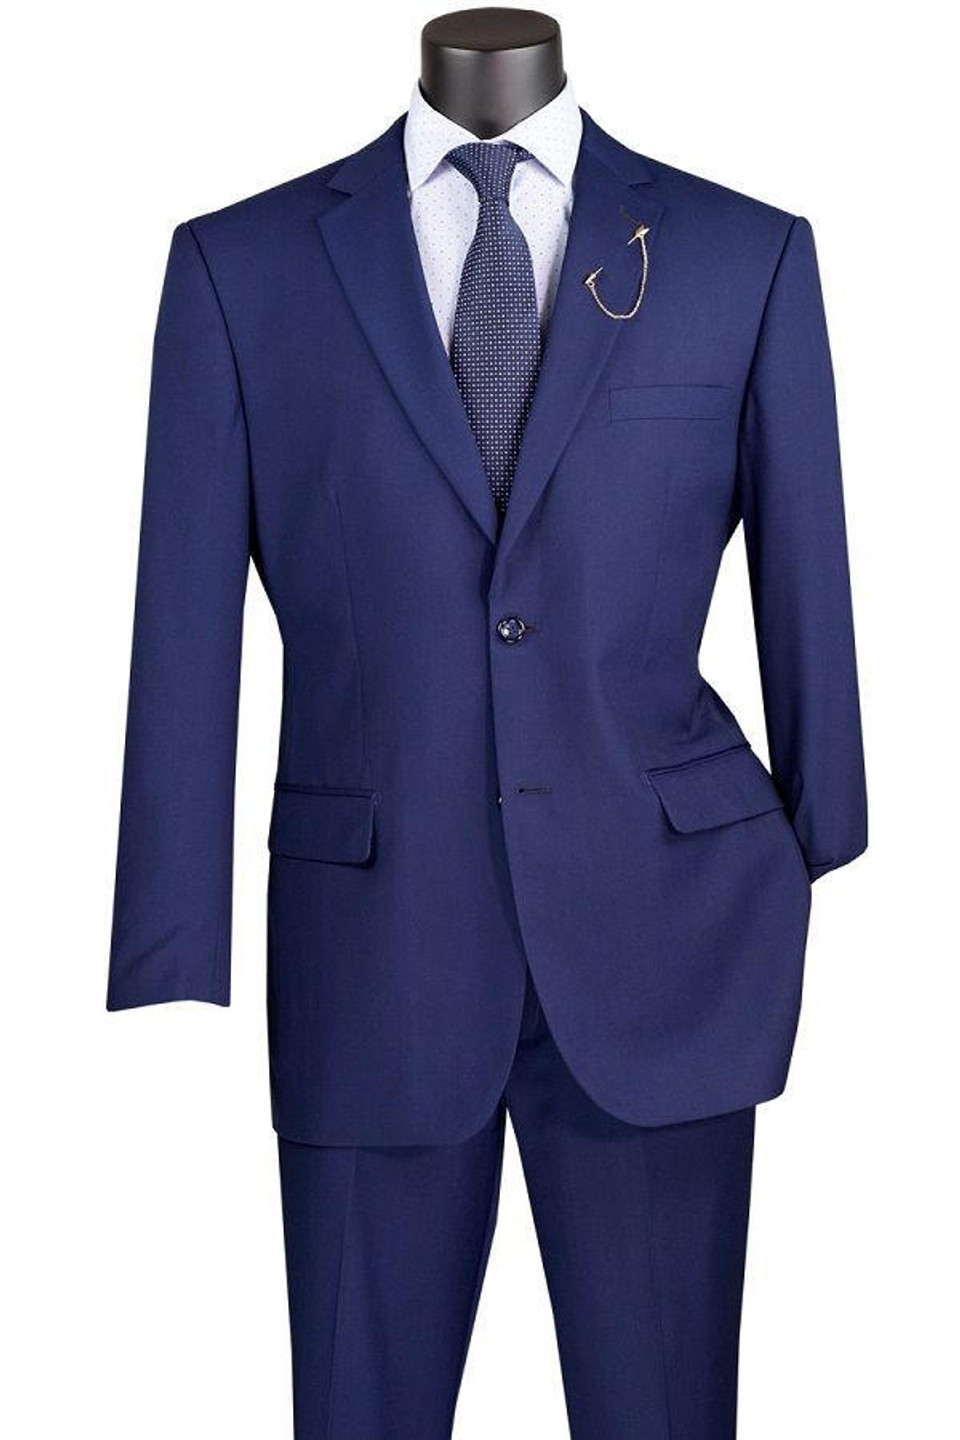 Glen Plaid Suit for Men Gray Regular Fit Flat Front Pants Church ...